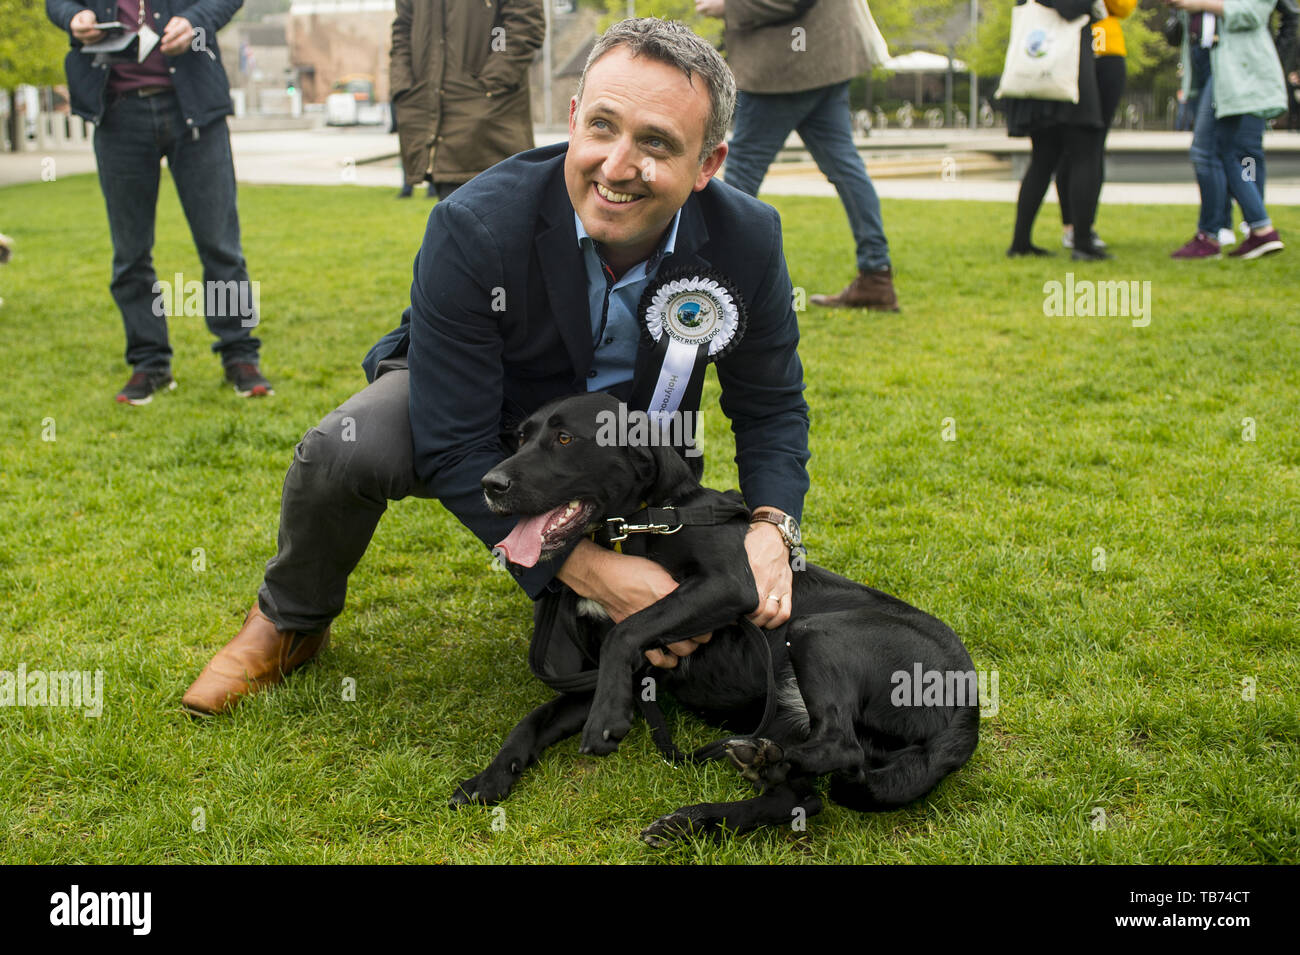 Msp ist ein Teil im 3. 'Holyrood Hund des Jahres Wettbewerb" von der Kennel Club im schottischen Parlament Gardens. Mit: Alex Cole-Hamilton Wo: Edinburgh, Großbritannien Wann: 29. Apr 2019 Credit: Euan Kirsche / WANN Stockfoto